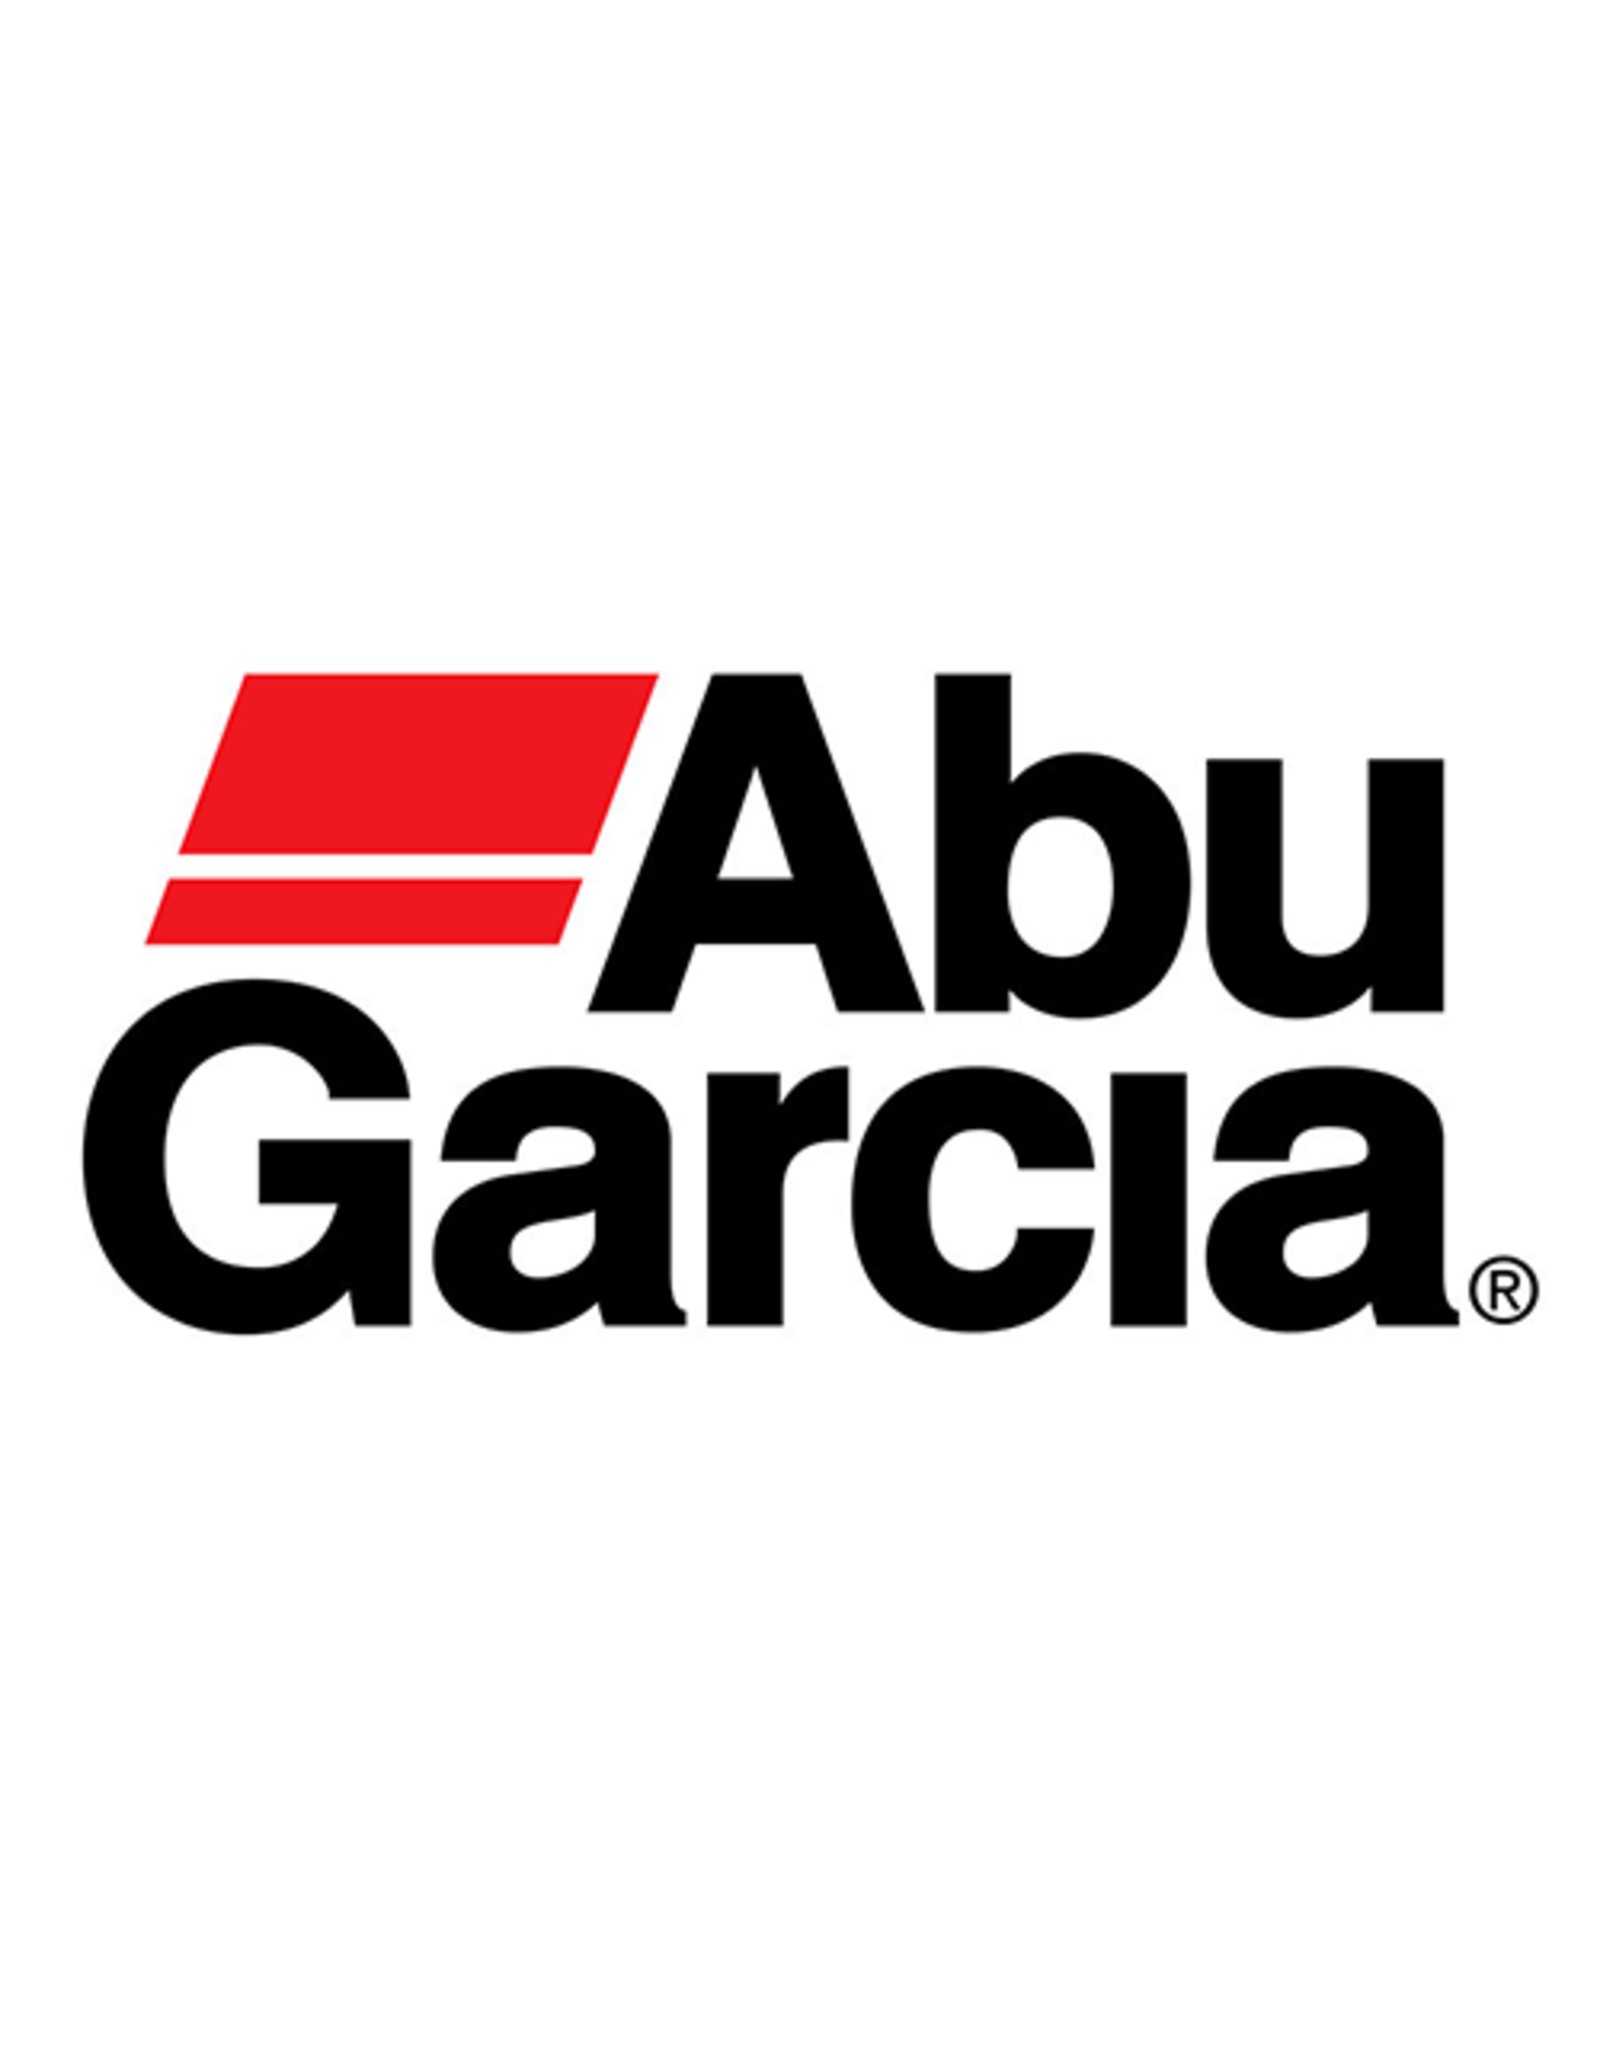 Abu Garcia 1122033  SCREW